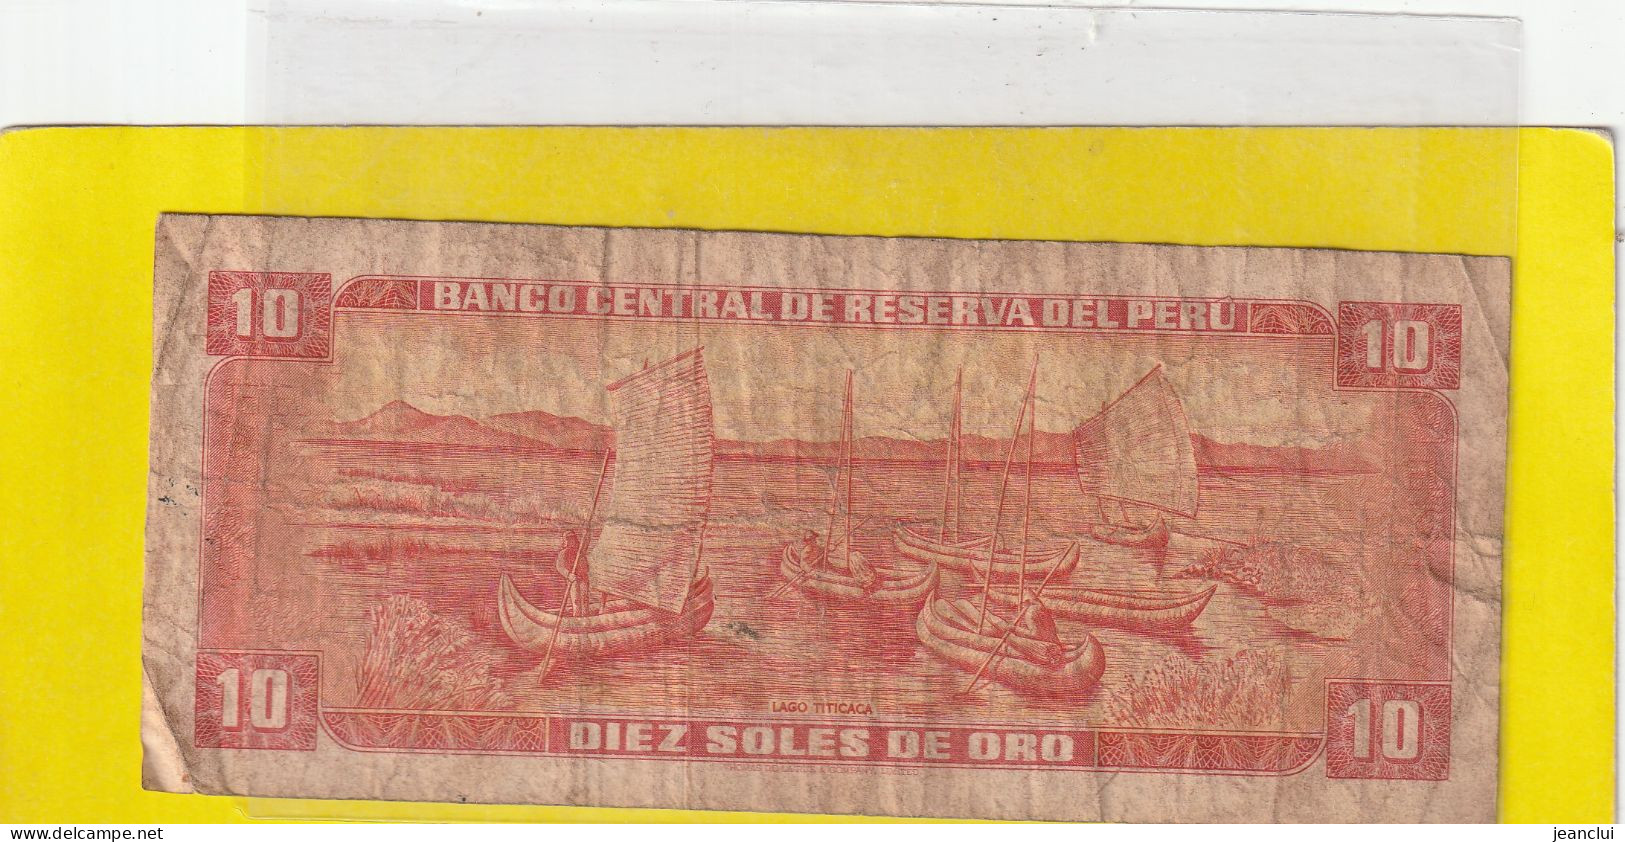 BANCO CENTRAL DE RESERVA DEL PERU .  10 SOLES DE ORO  .  24 DE MAYO DE 1973  . N°  I 343080 .  2 SCANNES  .  ETAT USITE - Perú